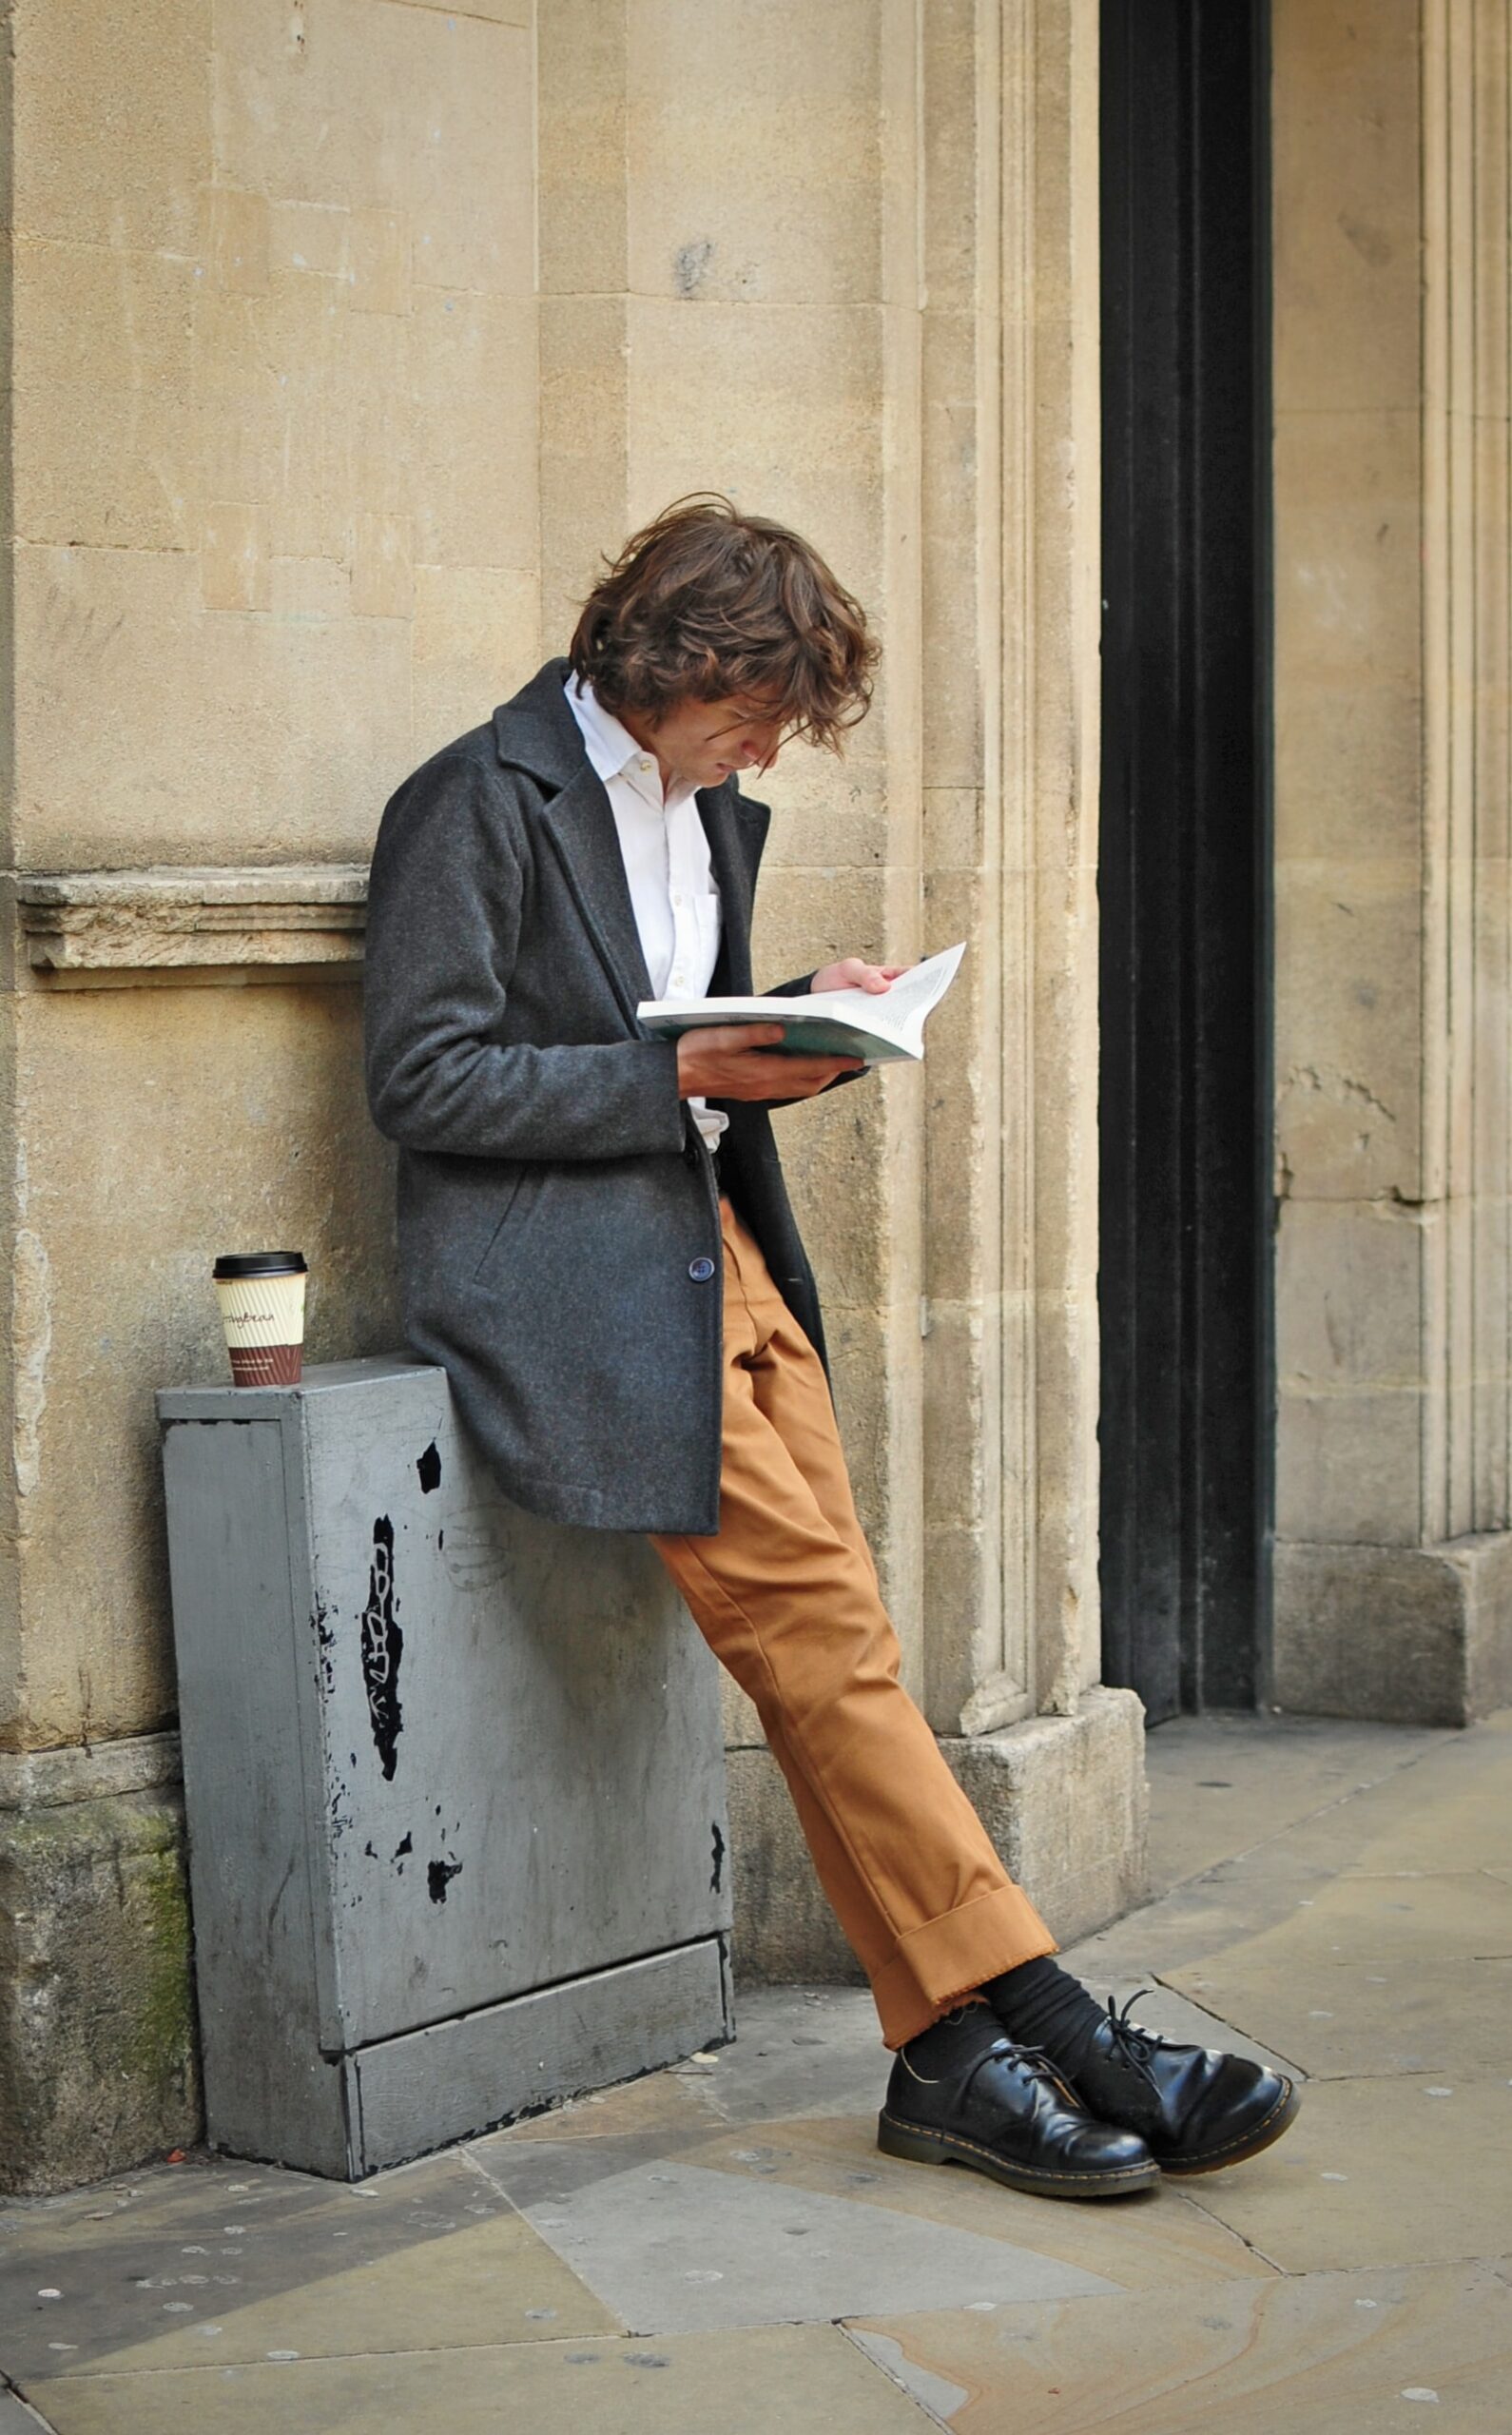 壁際にもたれて本を読む男性